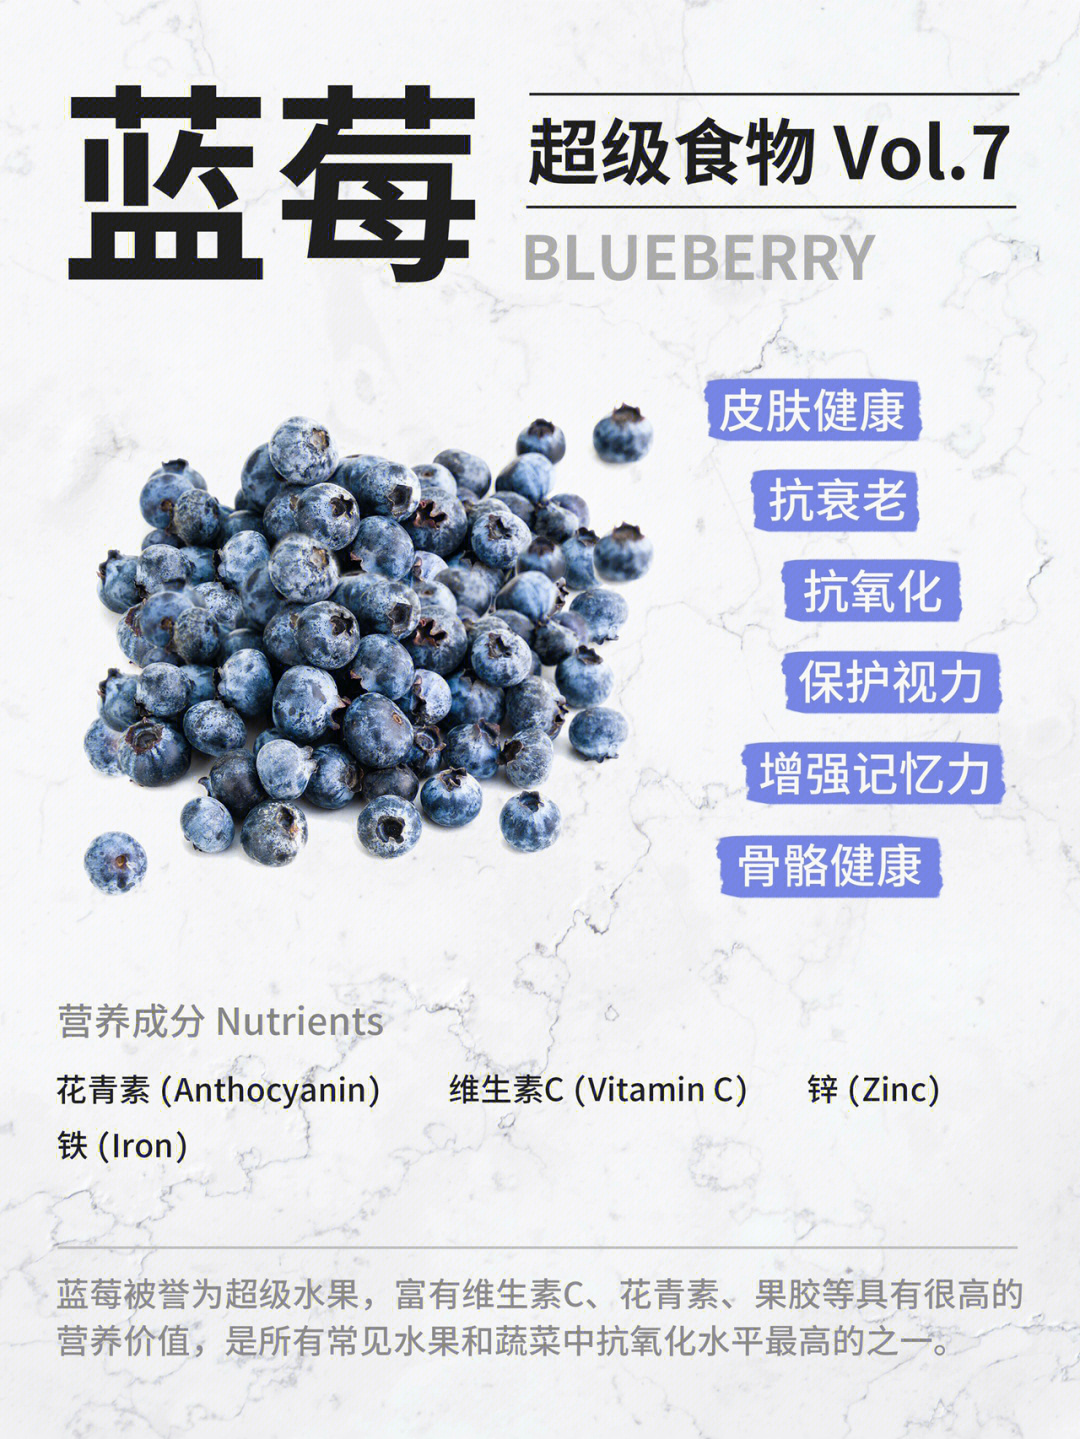 吃蓝莓的好处图片